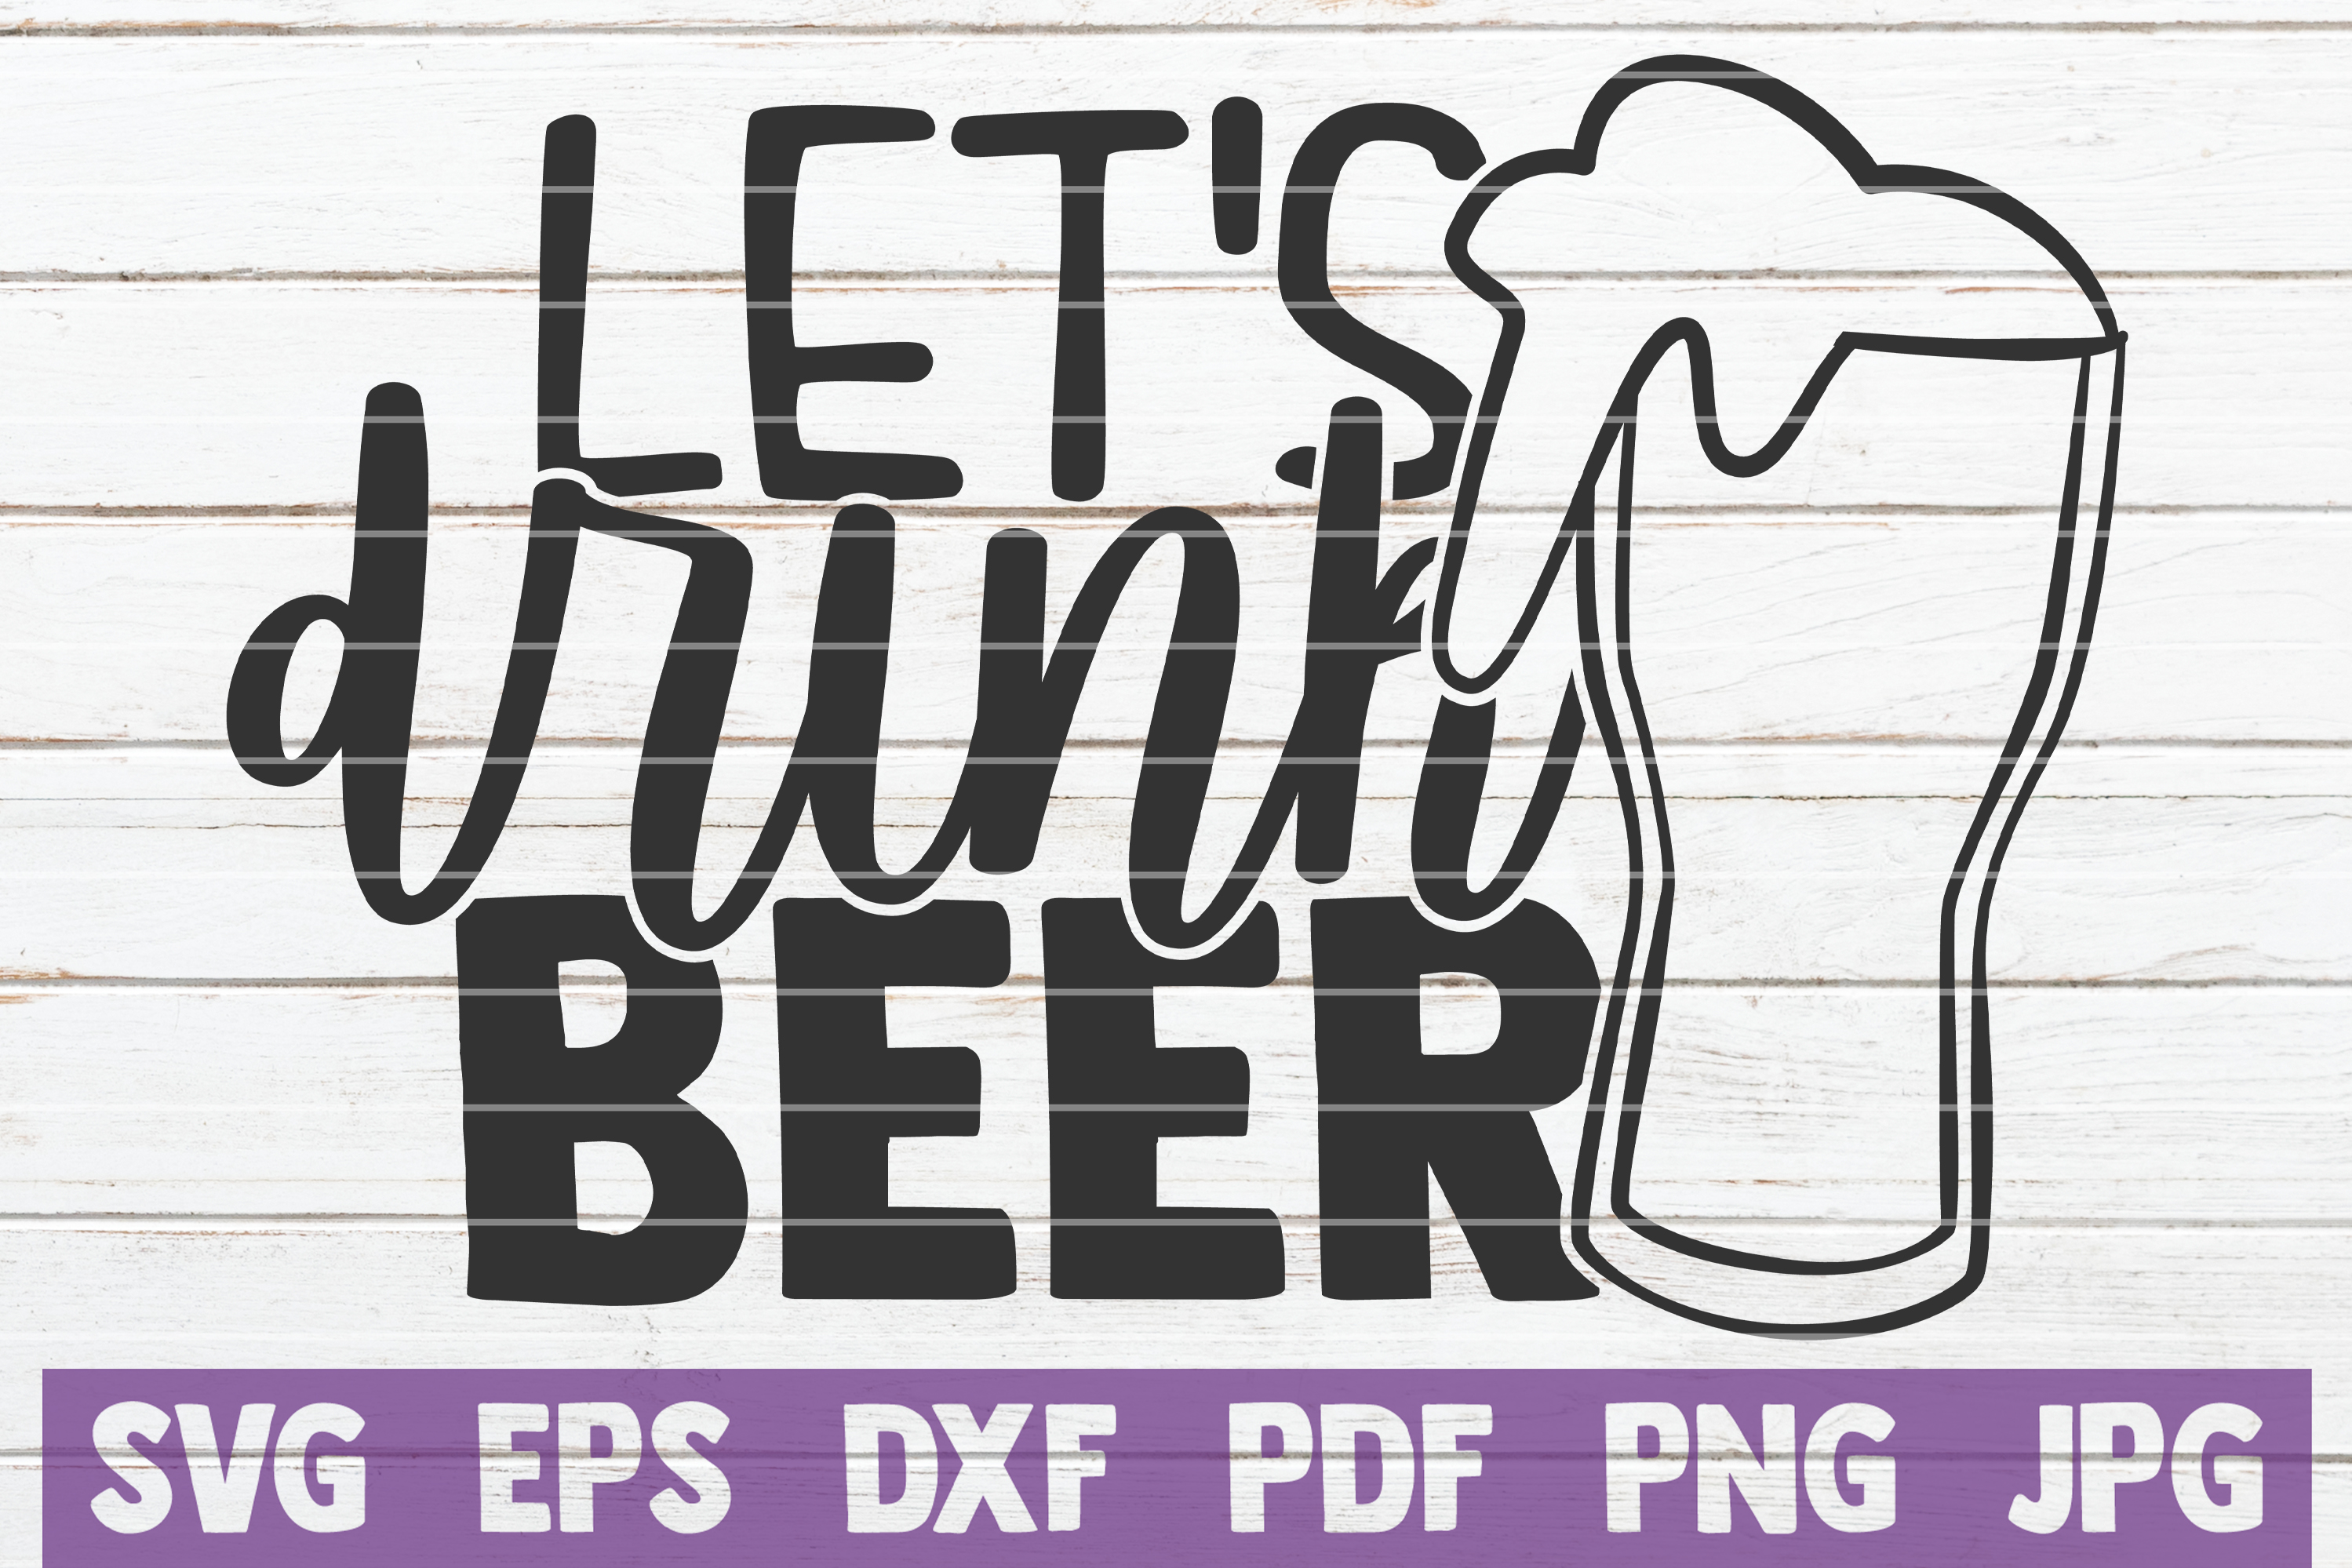 Let's Drink Beer SVG Cut File